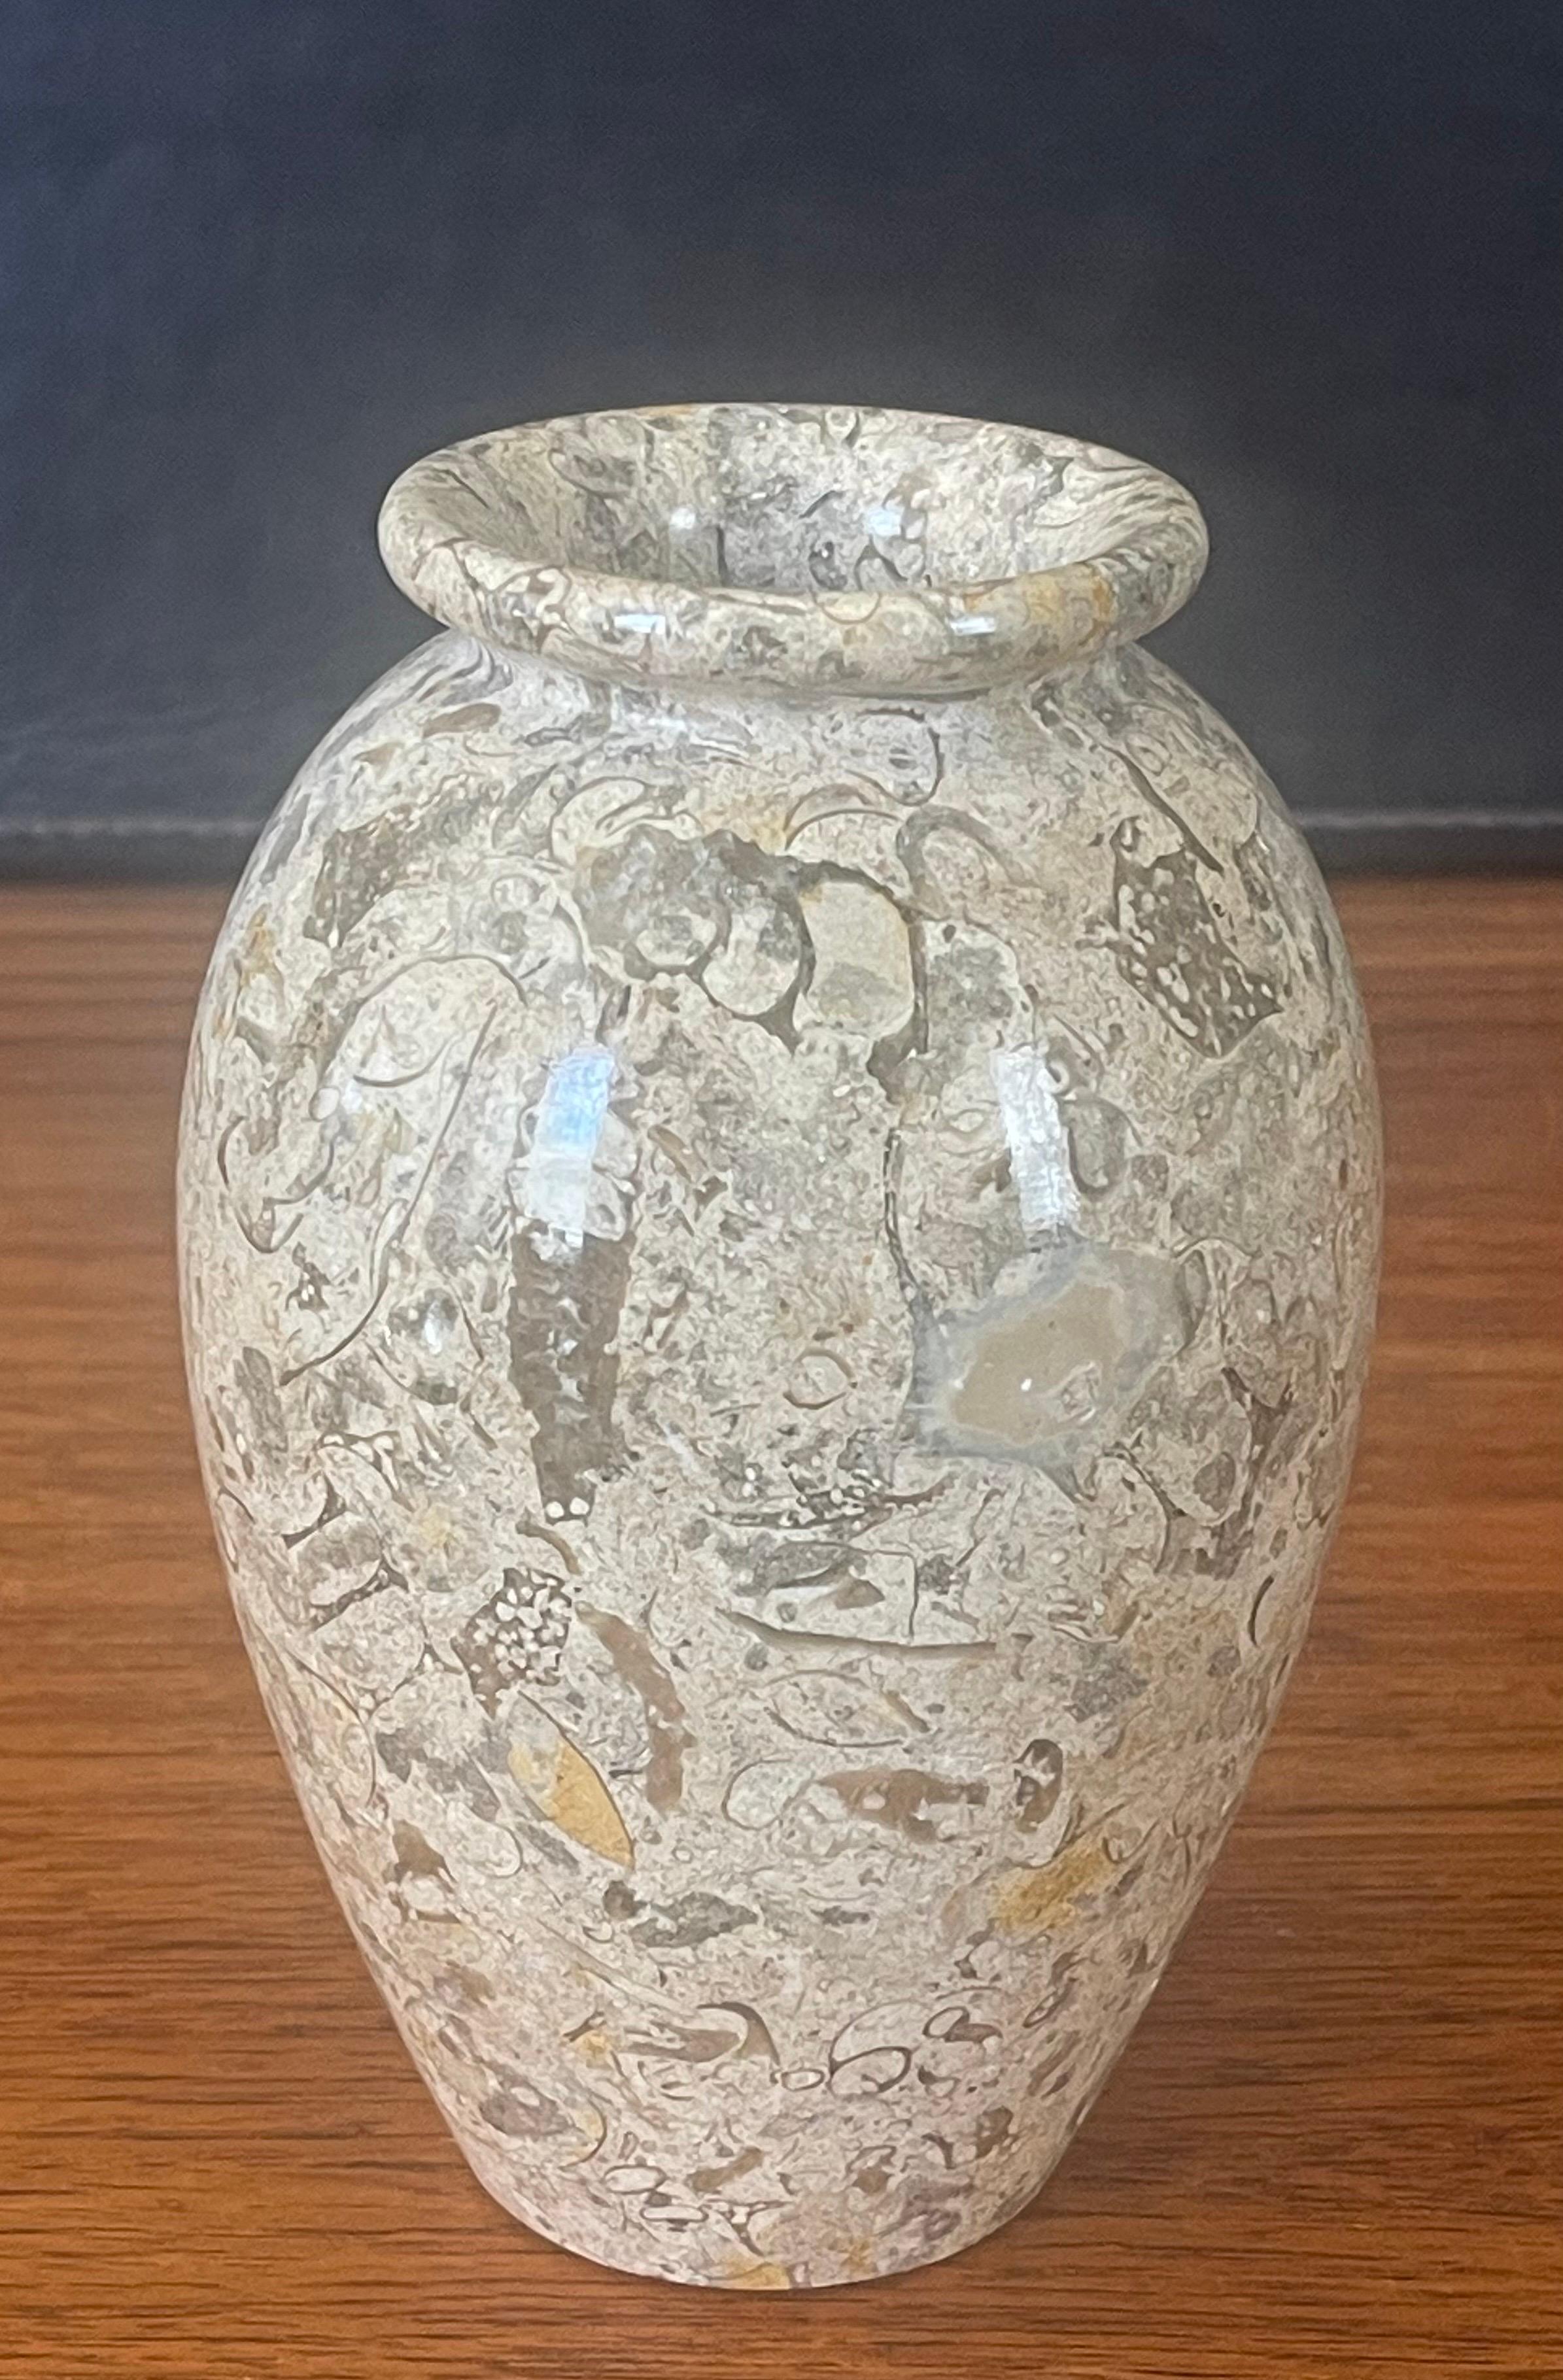 Petit vase en marbre italien post-moderne, vers les années 1970. Le vase est principalement de couleur havane foncé, mais il présente des veines de couleur crème, noire et grise. Le vase est en très bon état vintage, sans éclats ni fissures et